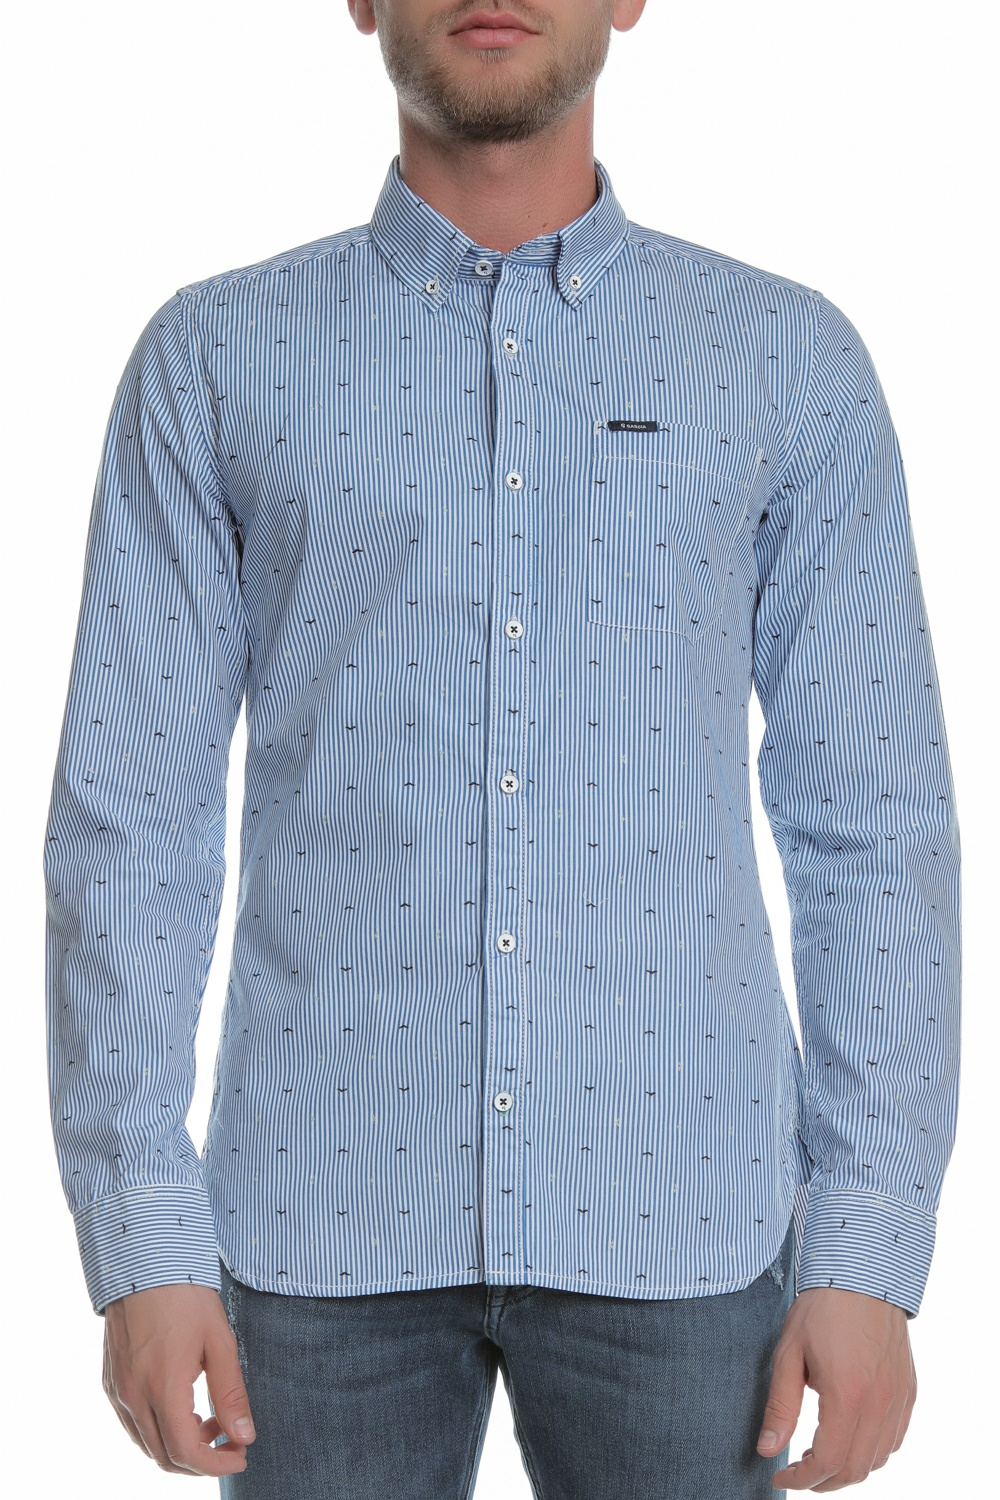 Ανδρικά/Ρούχα/Πουκάμισα/Μακρυμάνικα GARCIA JEANS - Ανδρικό πουκάμισο GARCIA JEANS μπλε λευκό